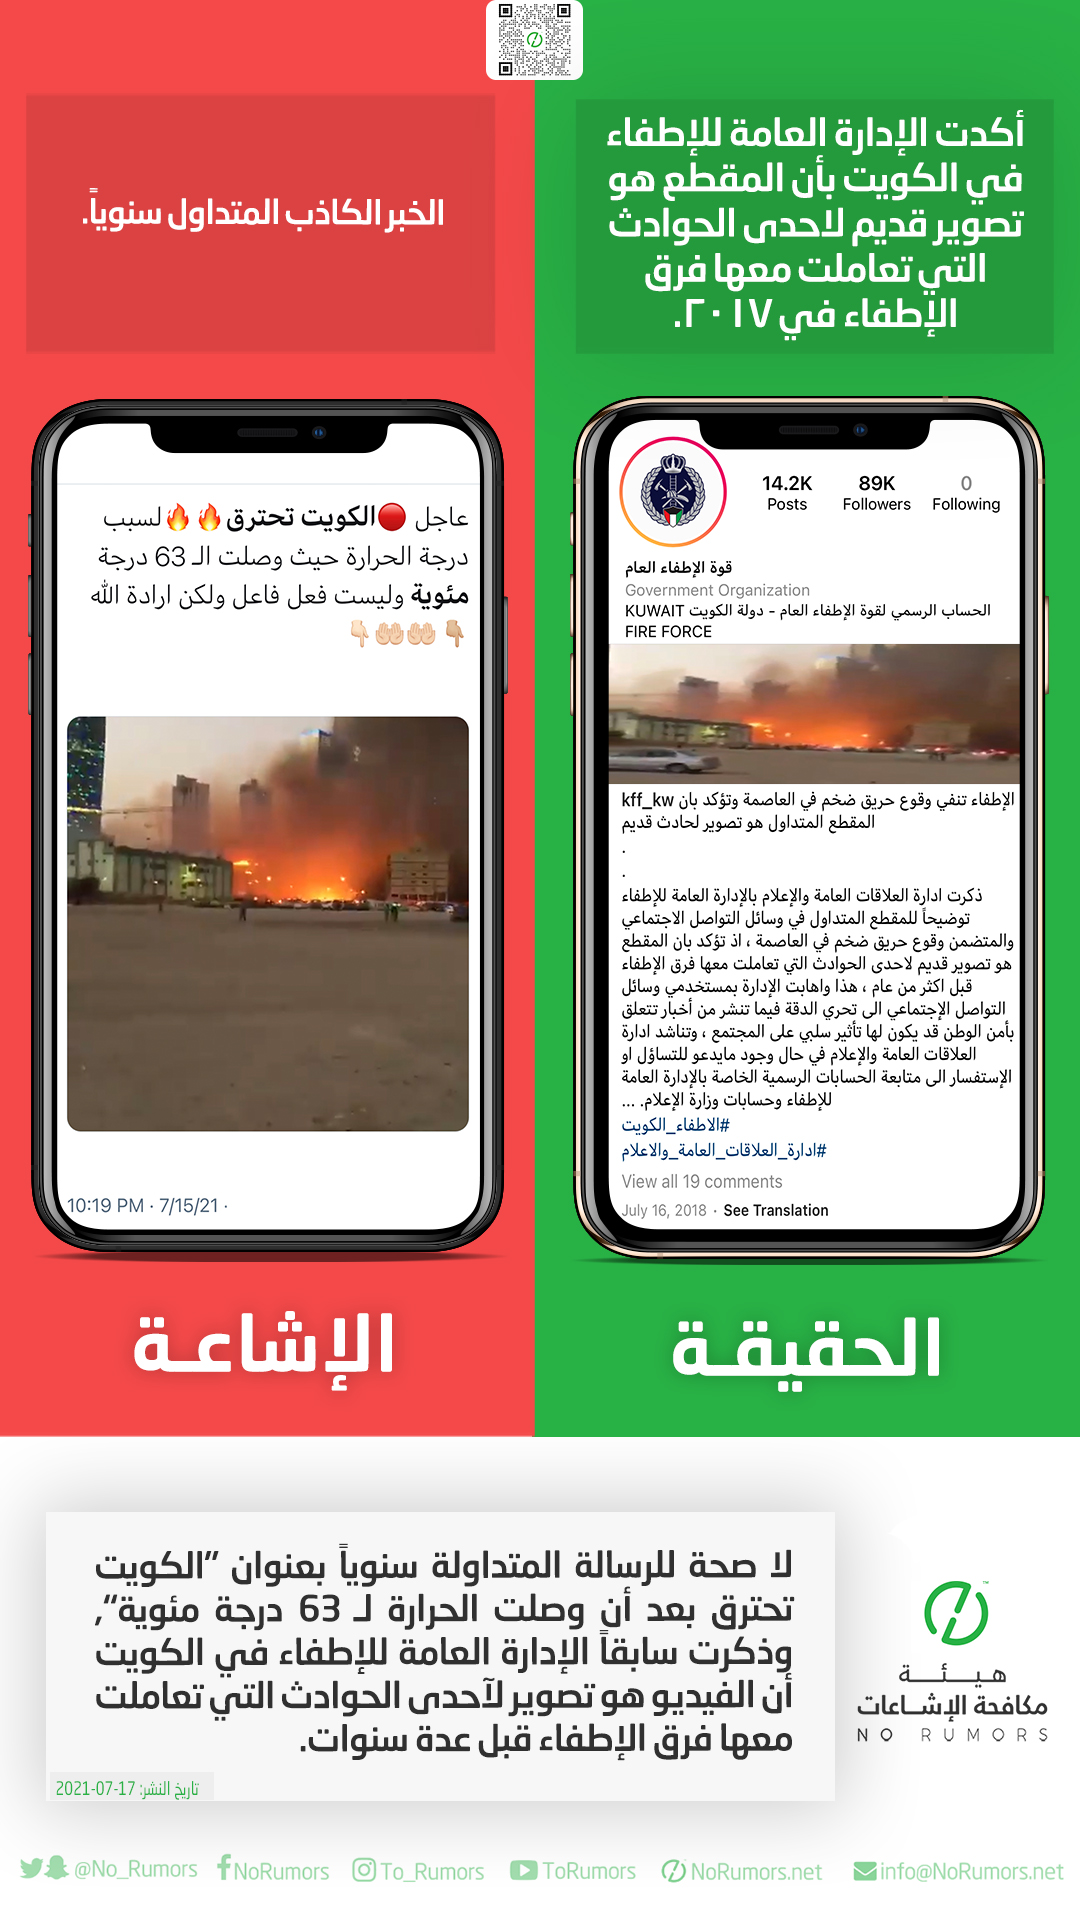 حقيقة الرسالة المتداولة سنوياً بعنوان “الكويت تحترق بعد أن وصلت الحرارة لـ63 درجة مئوية”